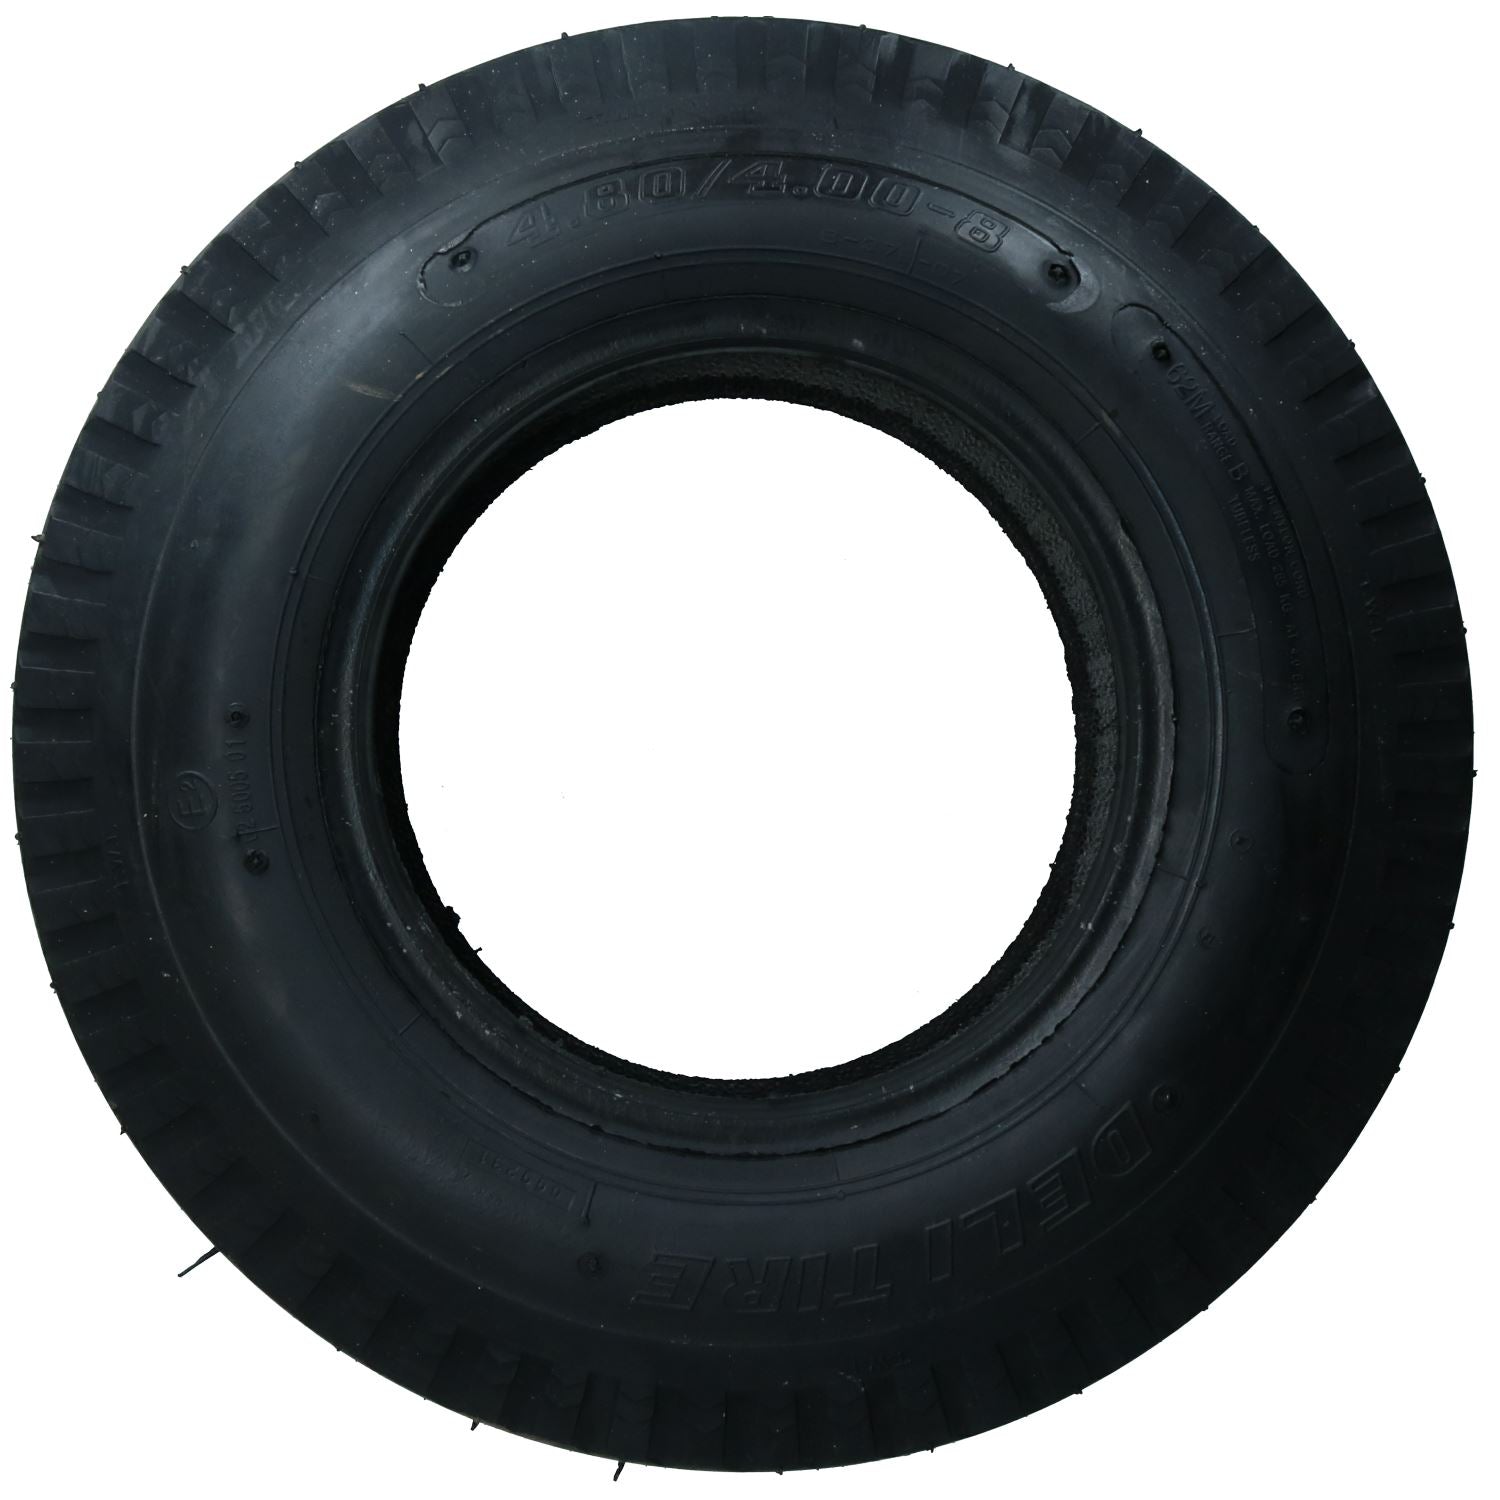 4.00 / 4.80 x 8" 4 Ply High Speed Trailer Tyre Erde Daxara 120 121 122 127